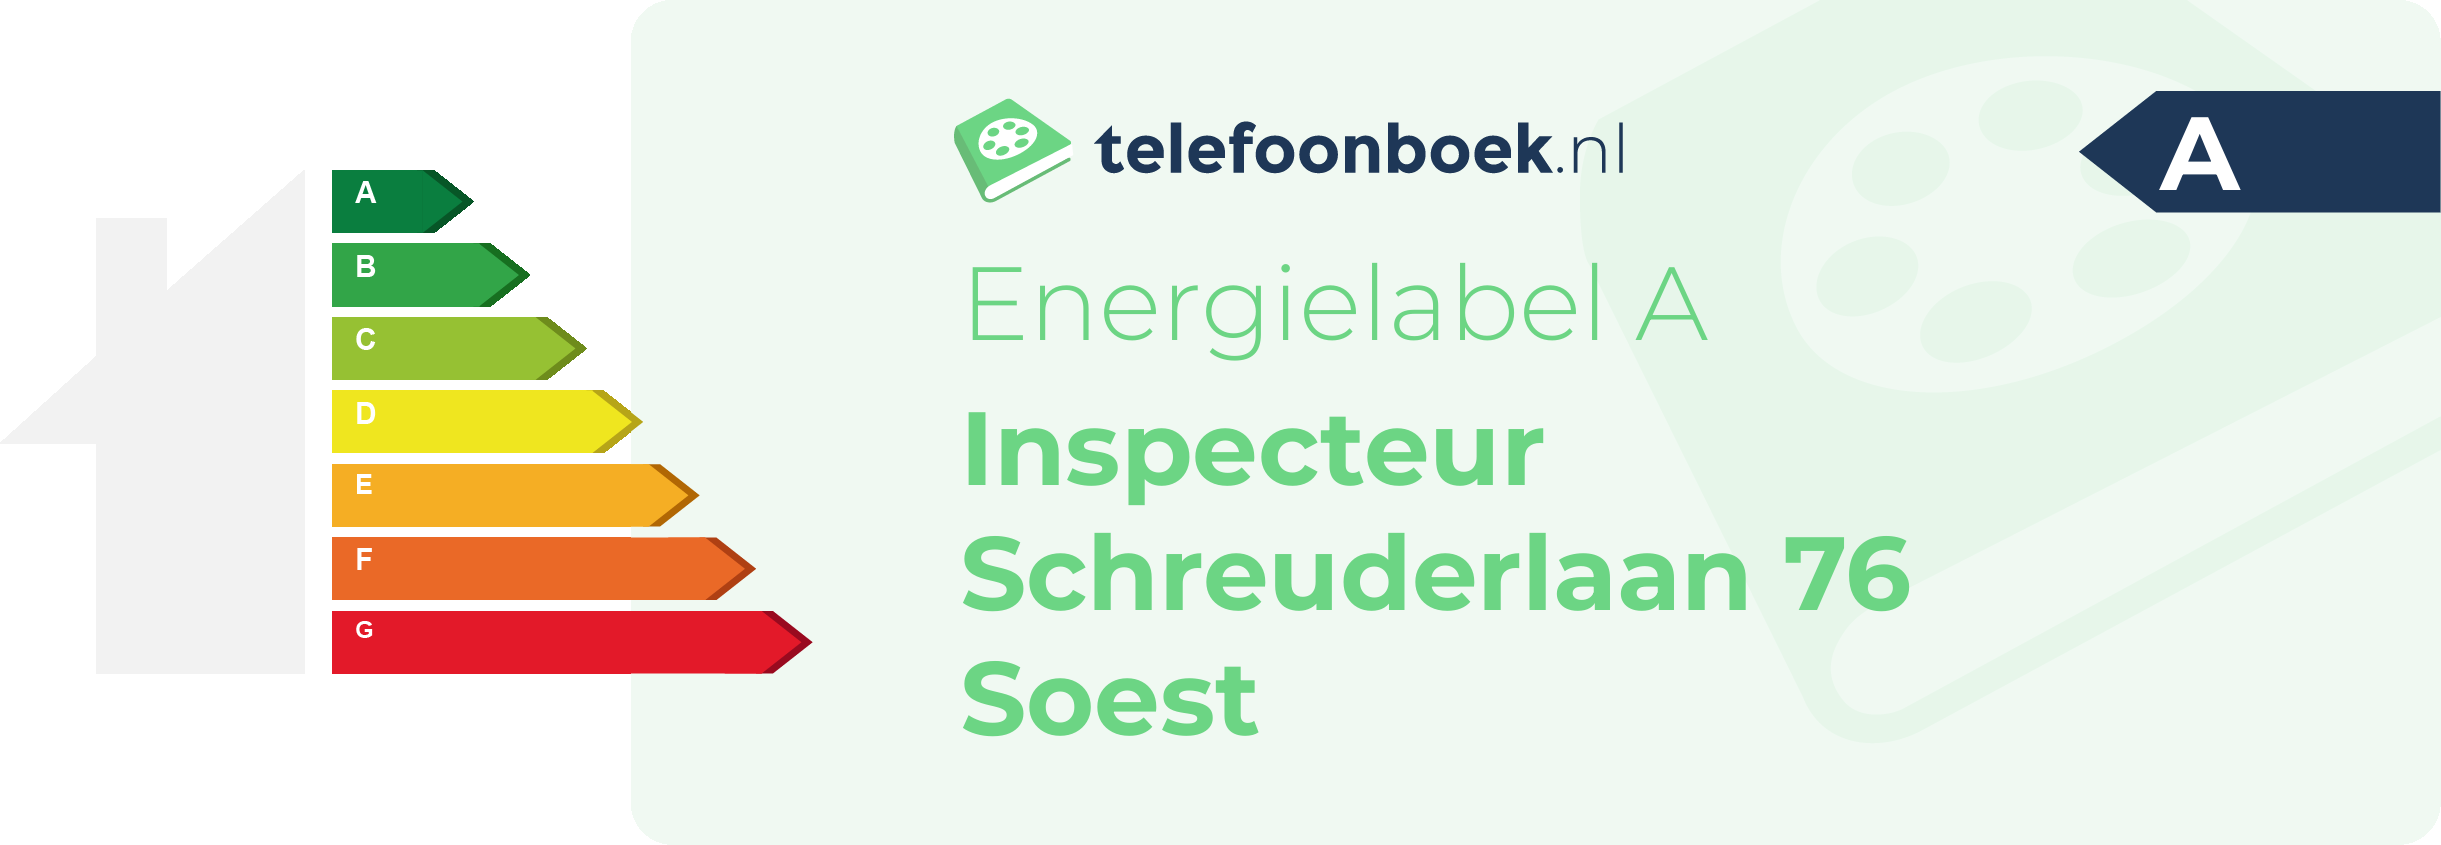 Energielabel Inspecteur Schreuderlaan 76 Soest